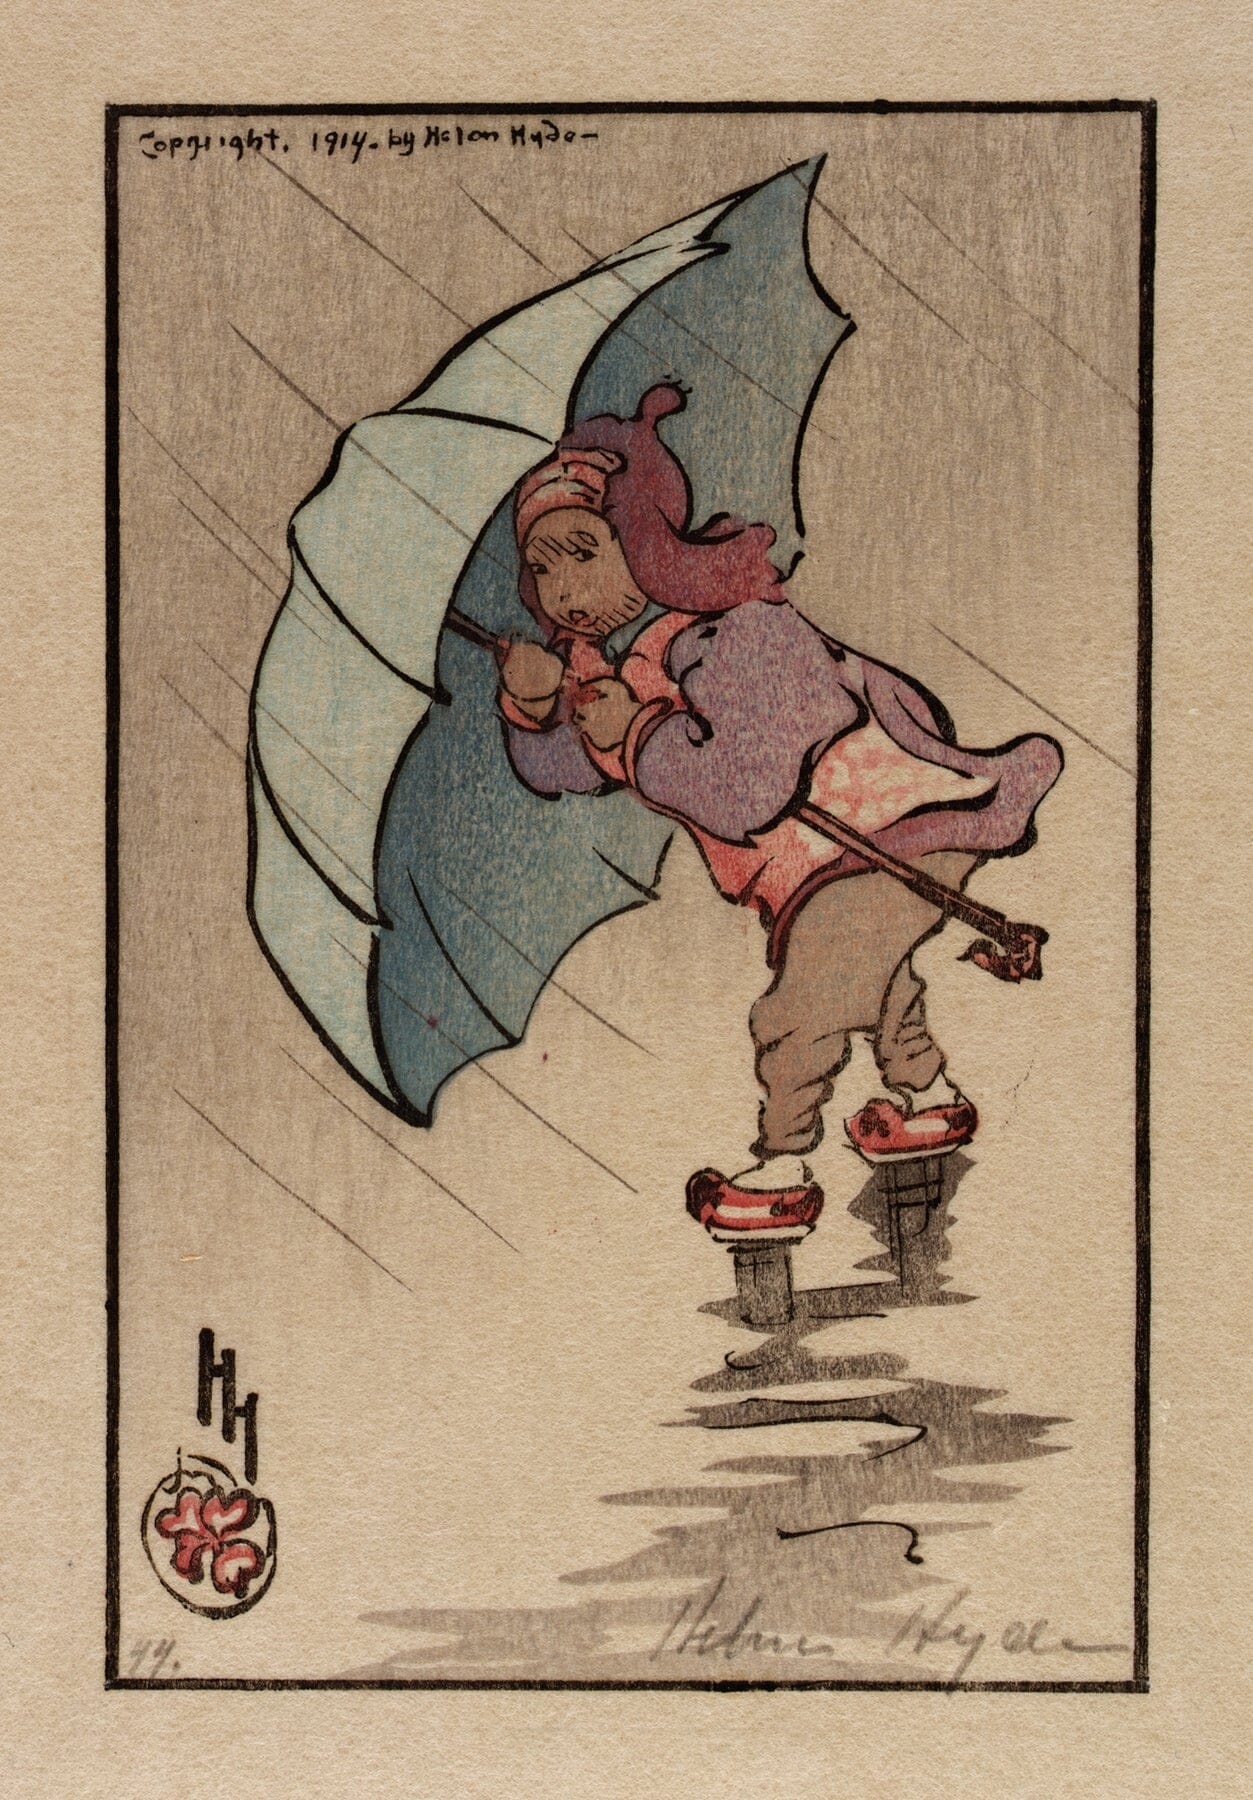 The Blue Umbrella (1914) | Bathroom artwork prints | Helen Hyde Posters, Prints, & Visual Artwork The Trumpet Shop   